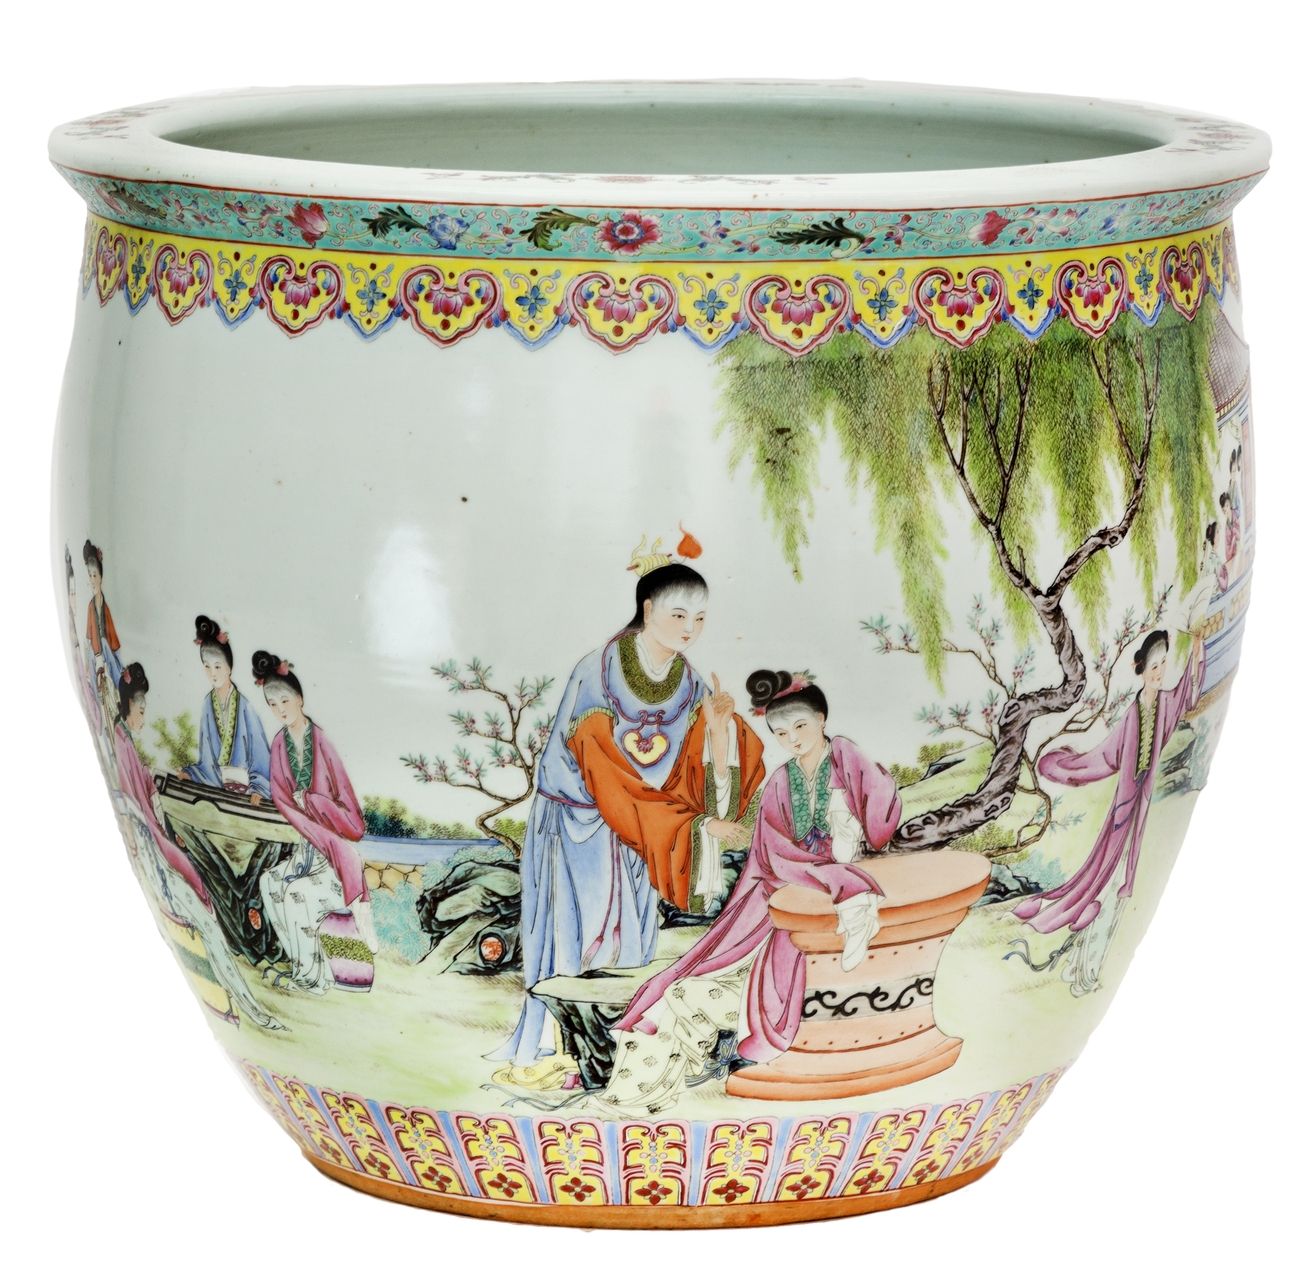 Null China, Republikanische Epoche (1912-1949)
Cache-Pot aus Porzellan mit einem&hellip;